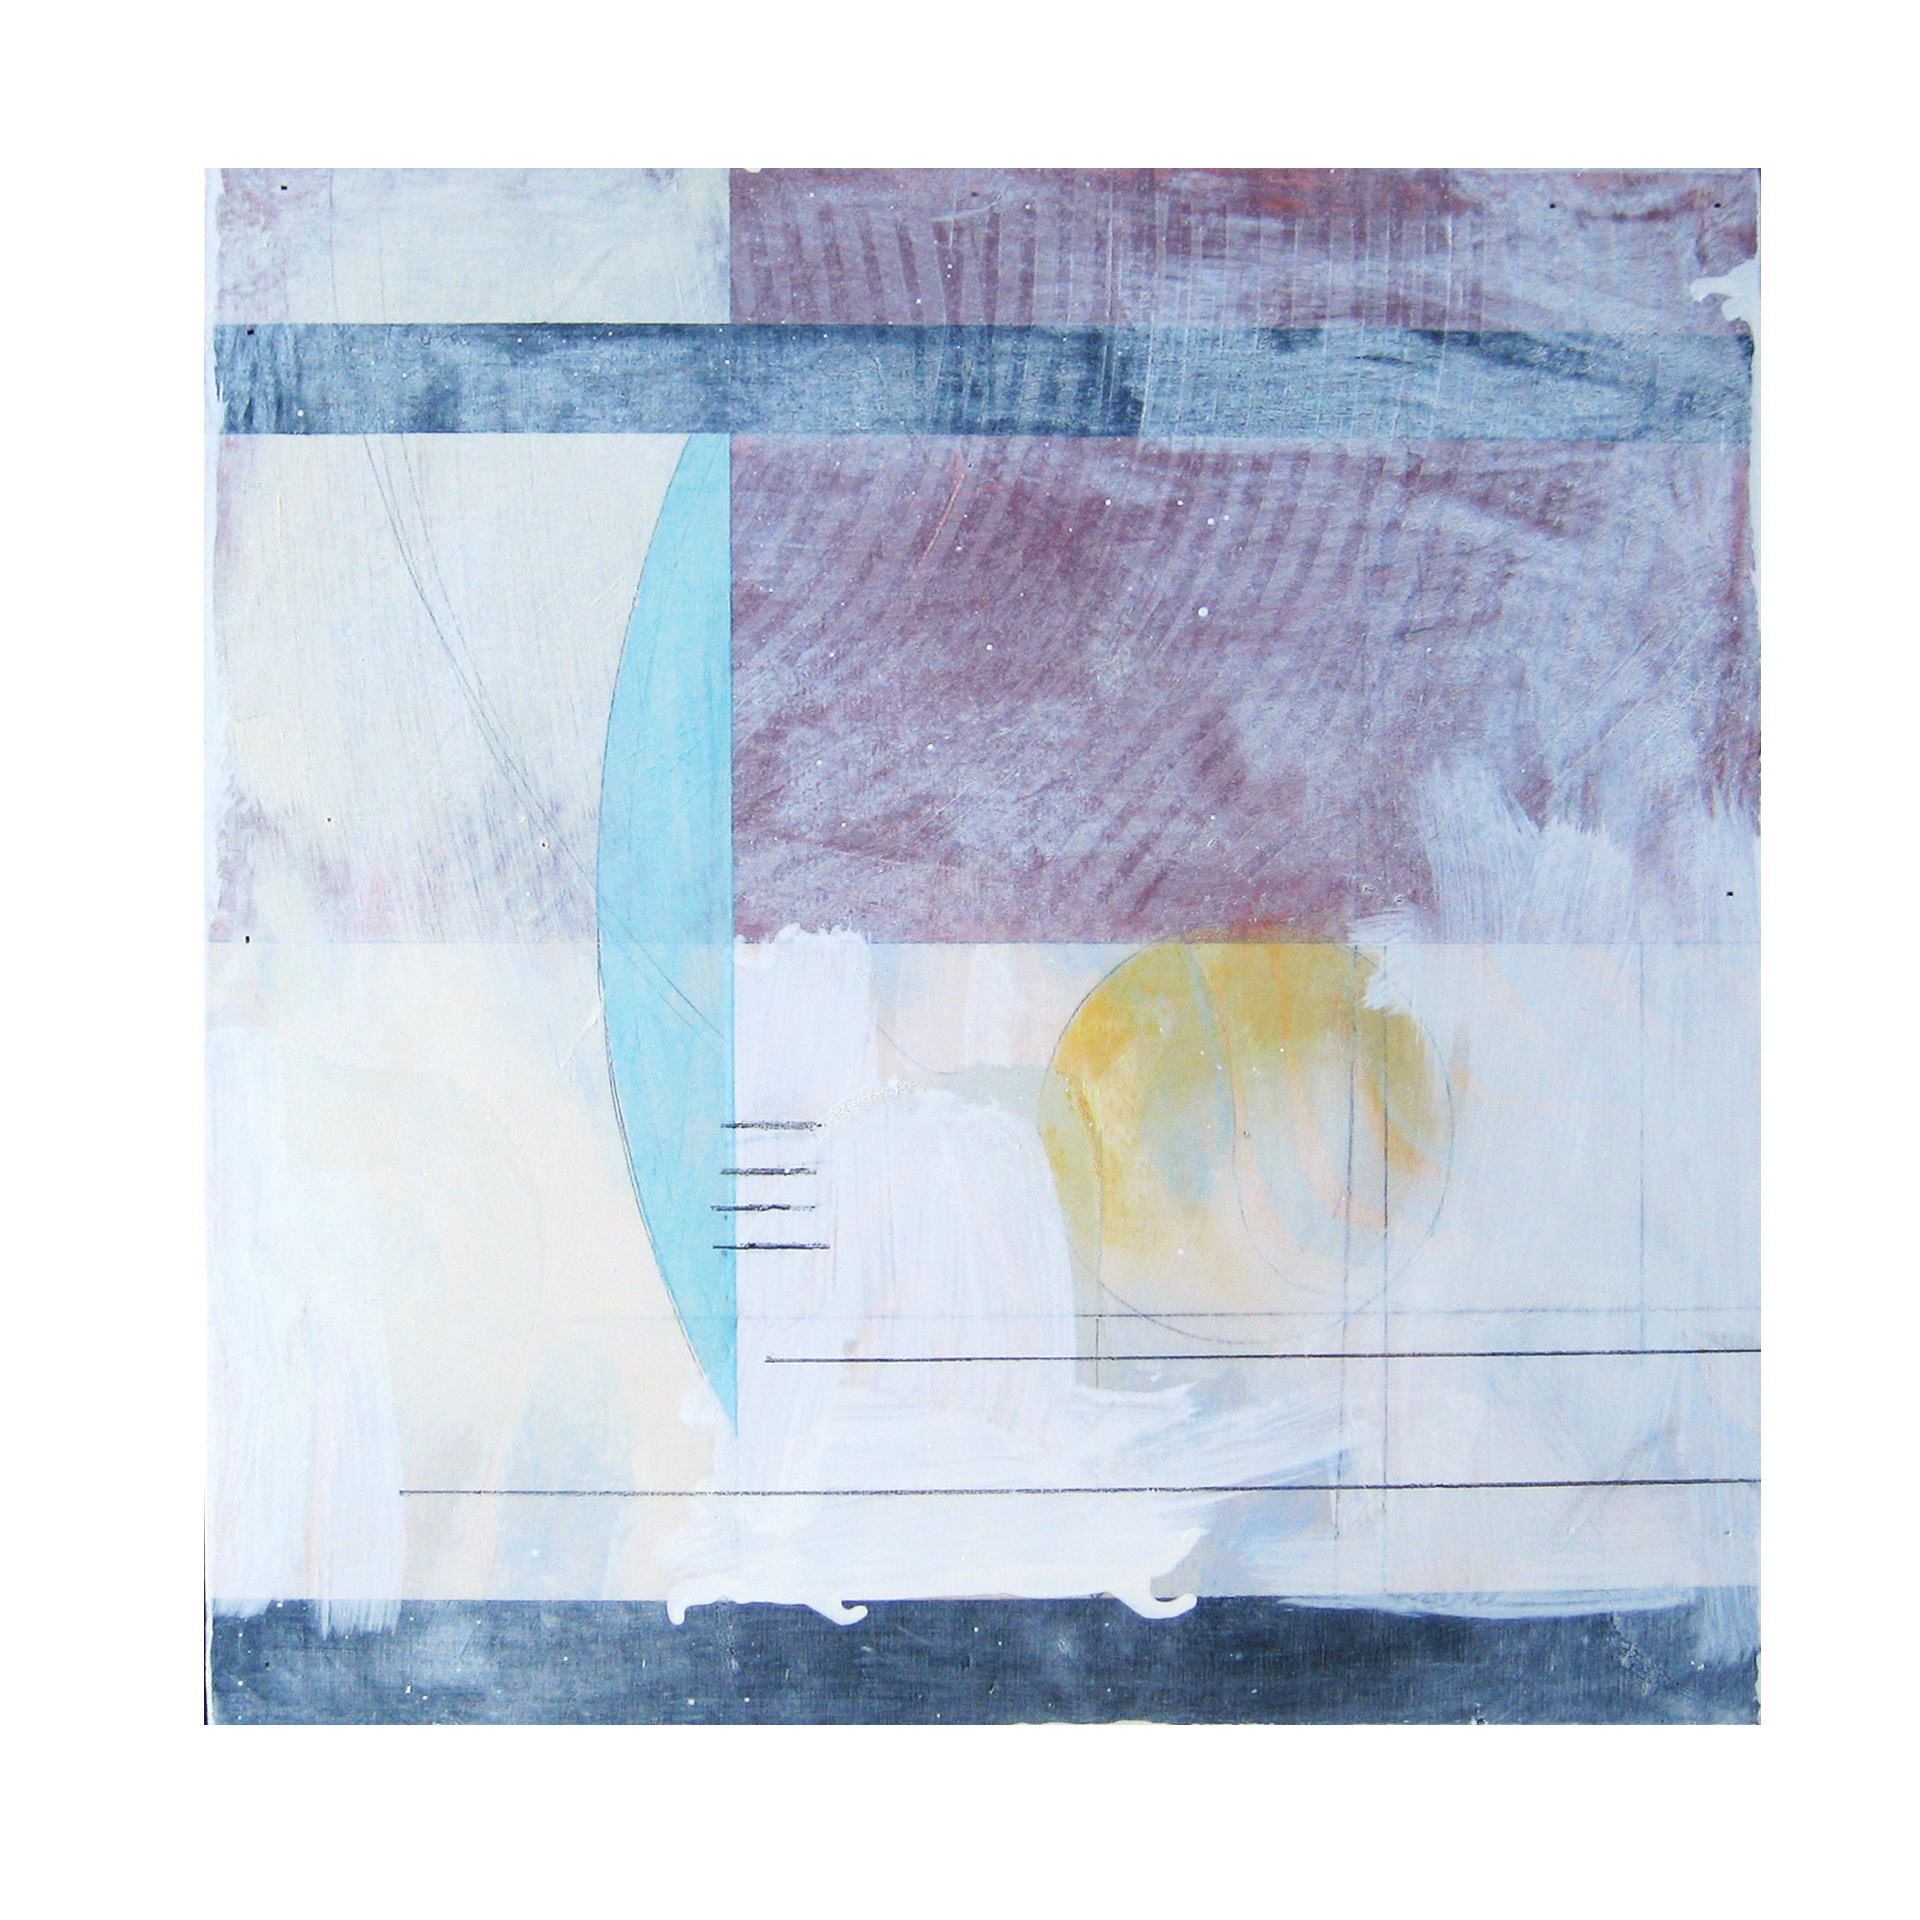 Joshua Willis, "Sun Moon," Oil, 18"x 18", 2014